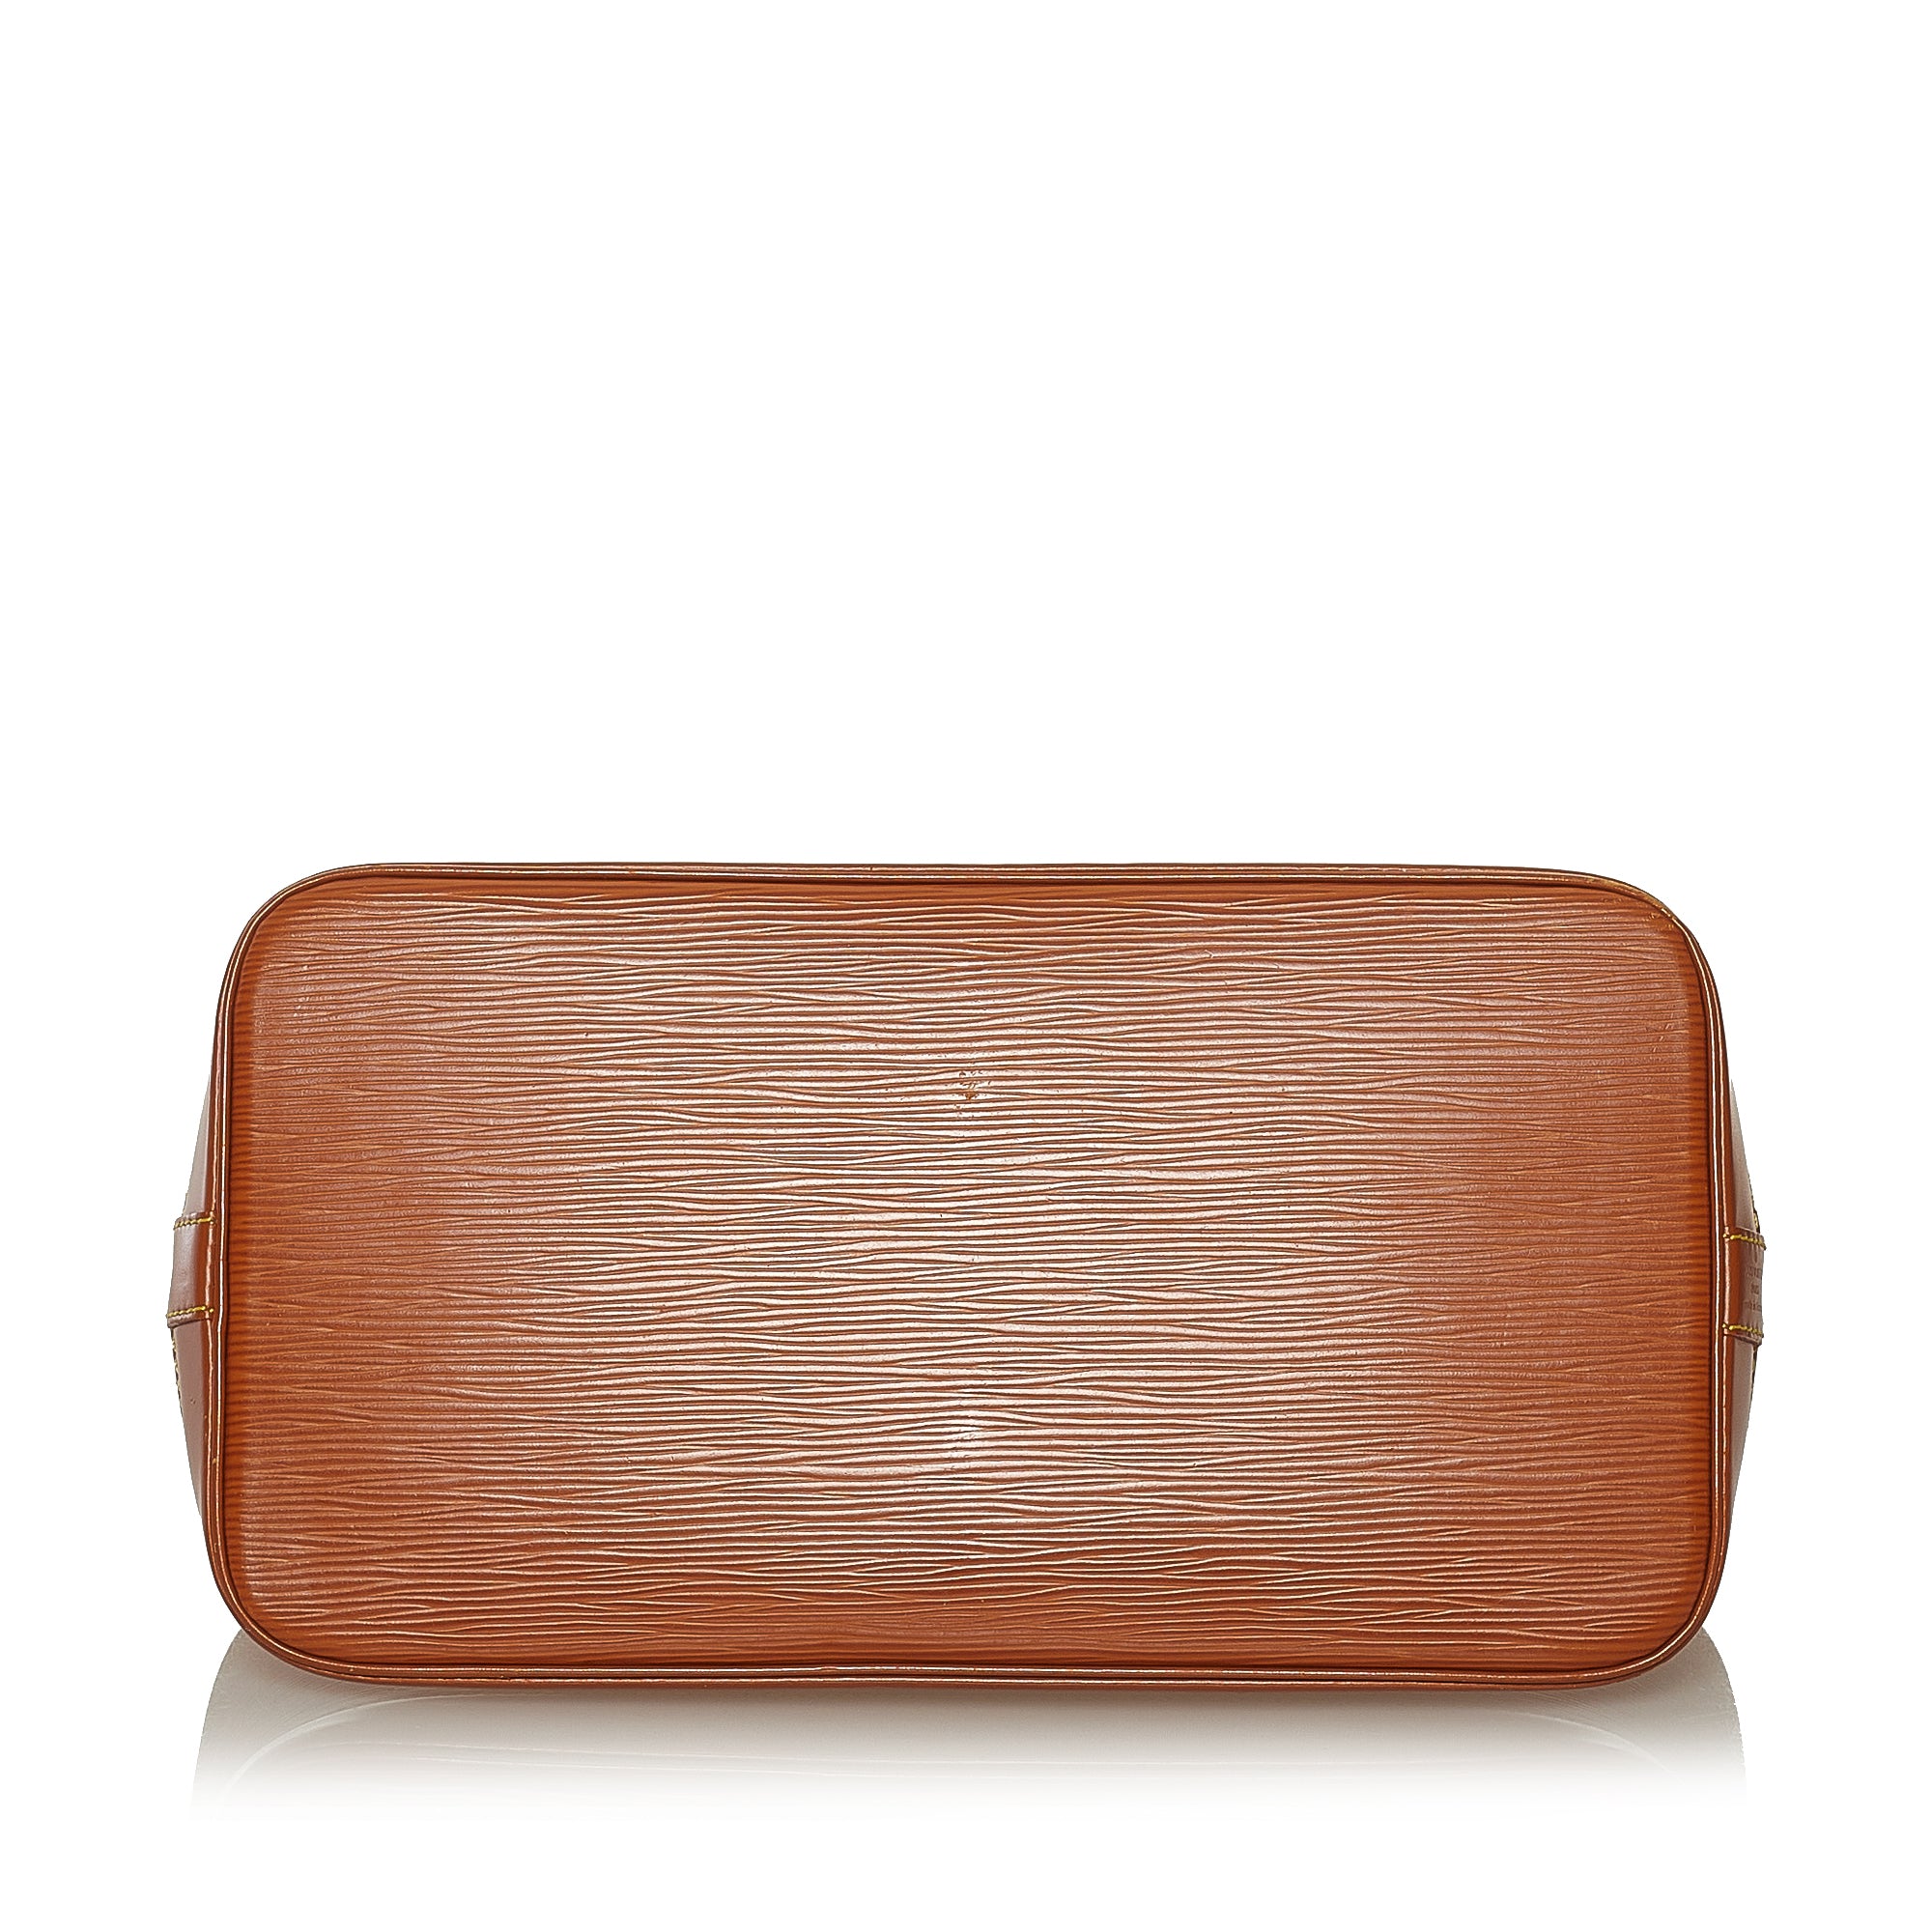 Tan Louis Vuitton Epi Leather Alma PM Bag